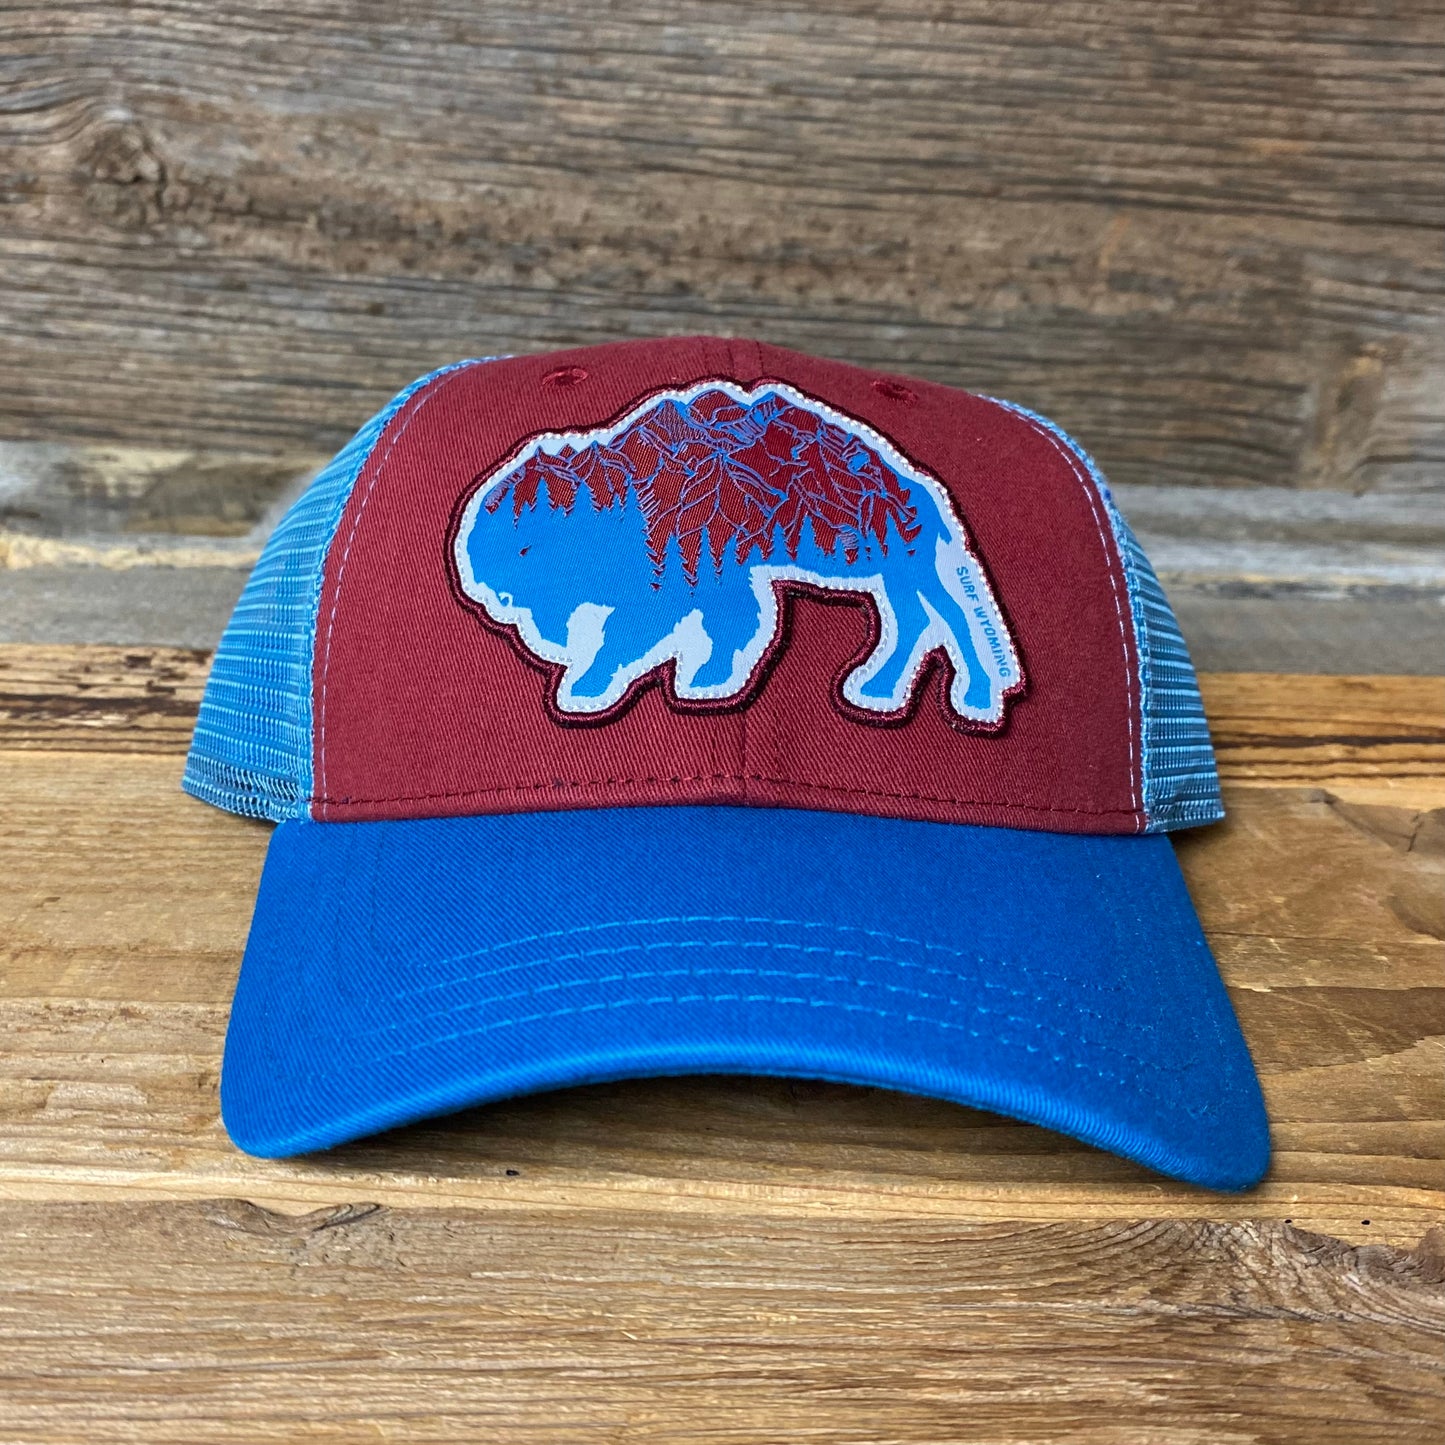 Surf Wyoming® Bison Peak Trucker Hat - Crimson/Electric Blue